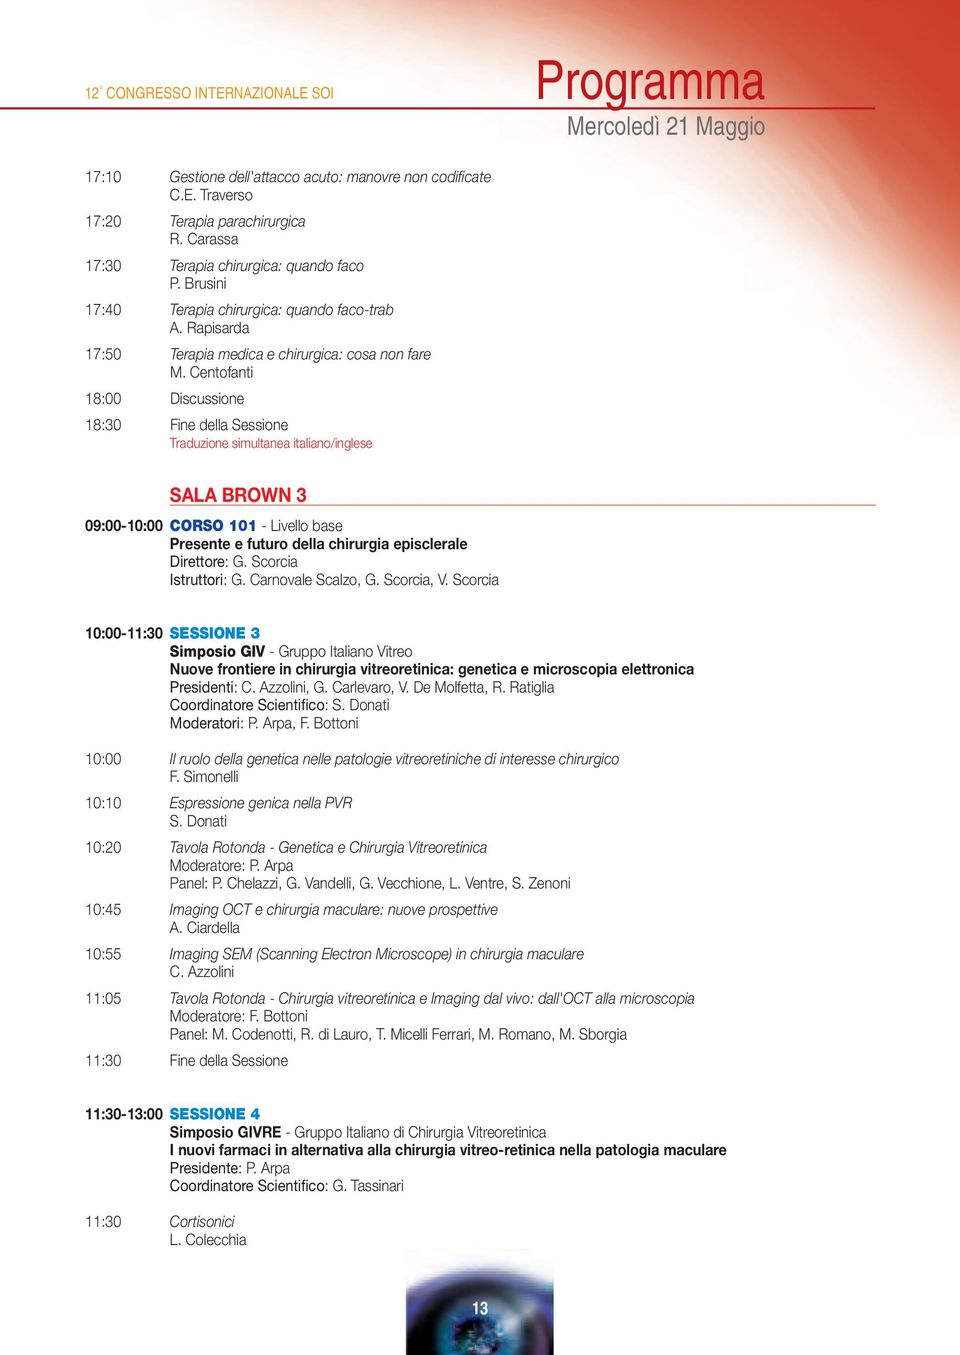 Centofanti 18:00 Discussione 18:30 Fine della Sessione Traduzione simultanea italiano/inglese SALA BROWN 3 09:00-10:00 CORSO 101 - Livello base Presente e futuro della chirurgia episclerale